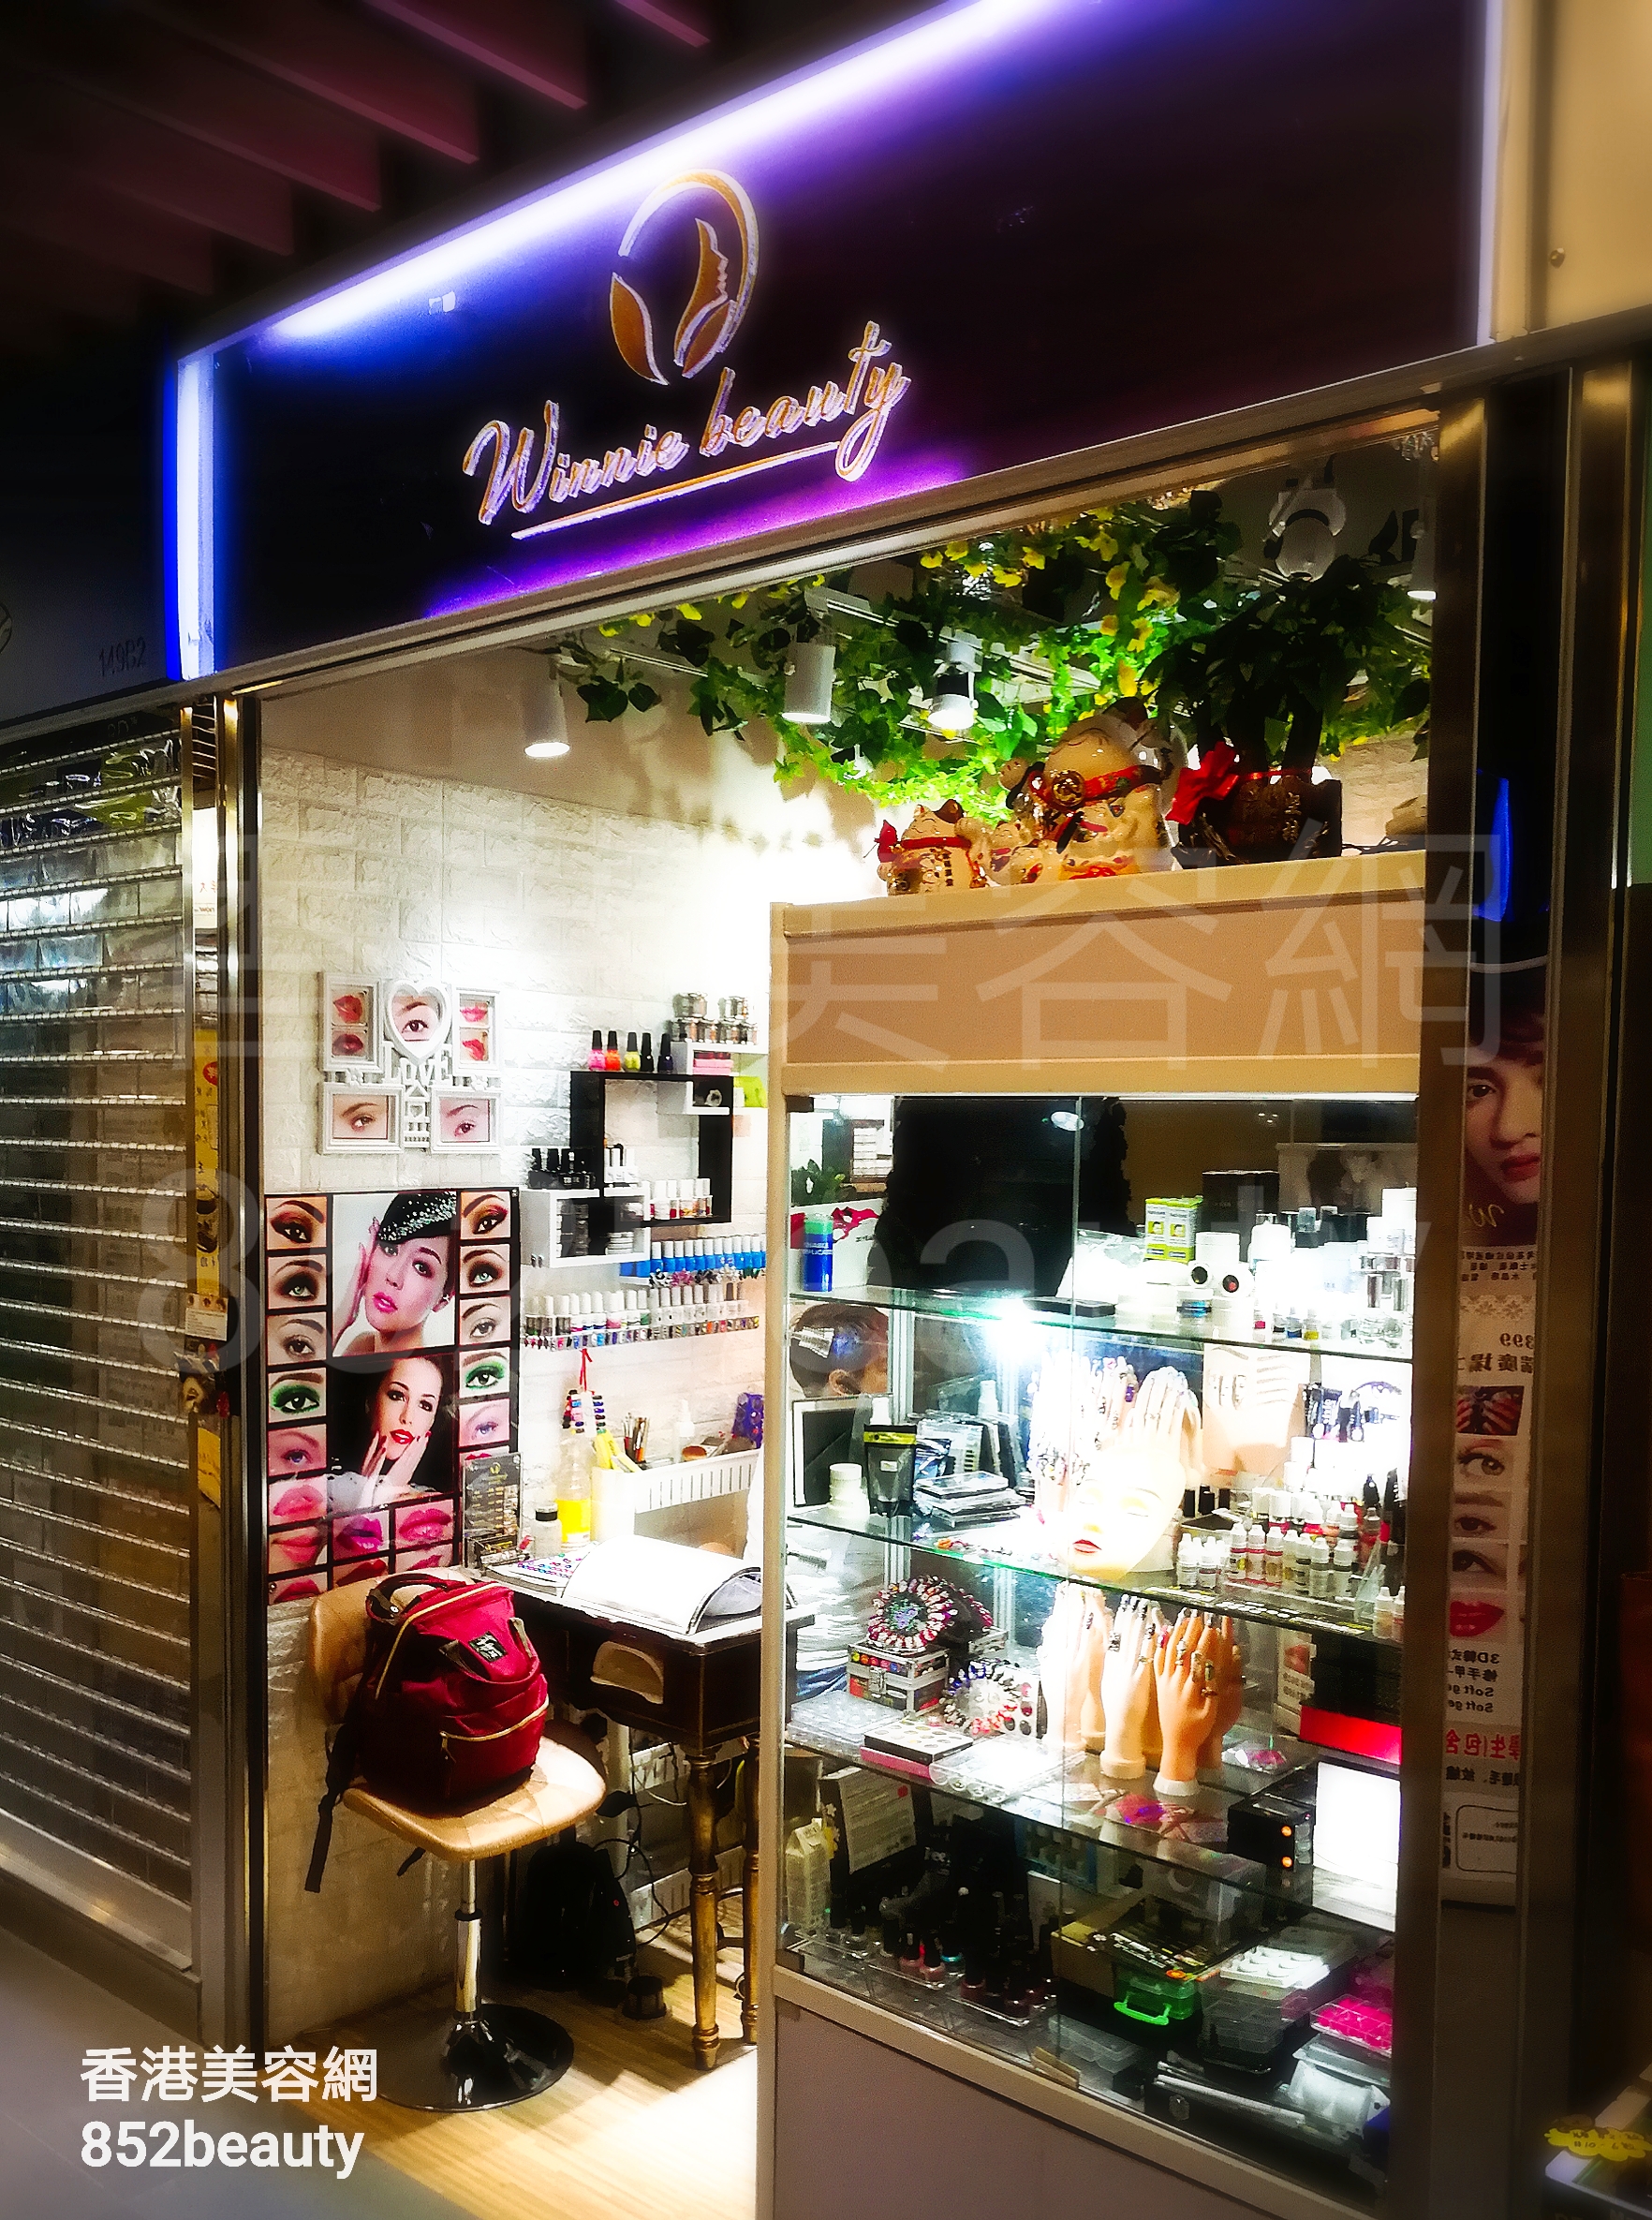 香港美容網 Hong Kong Beauty Salon 美容院 / 美容師: Winnie Beauty